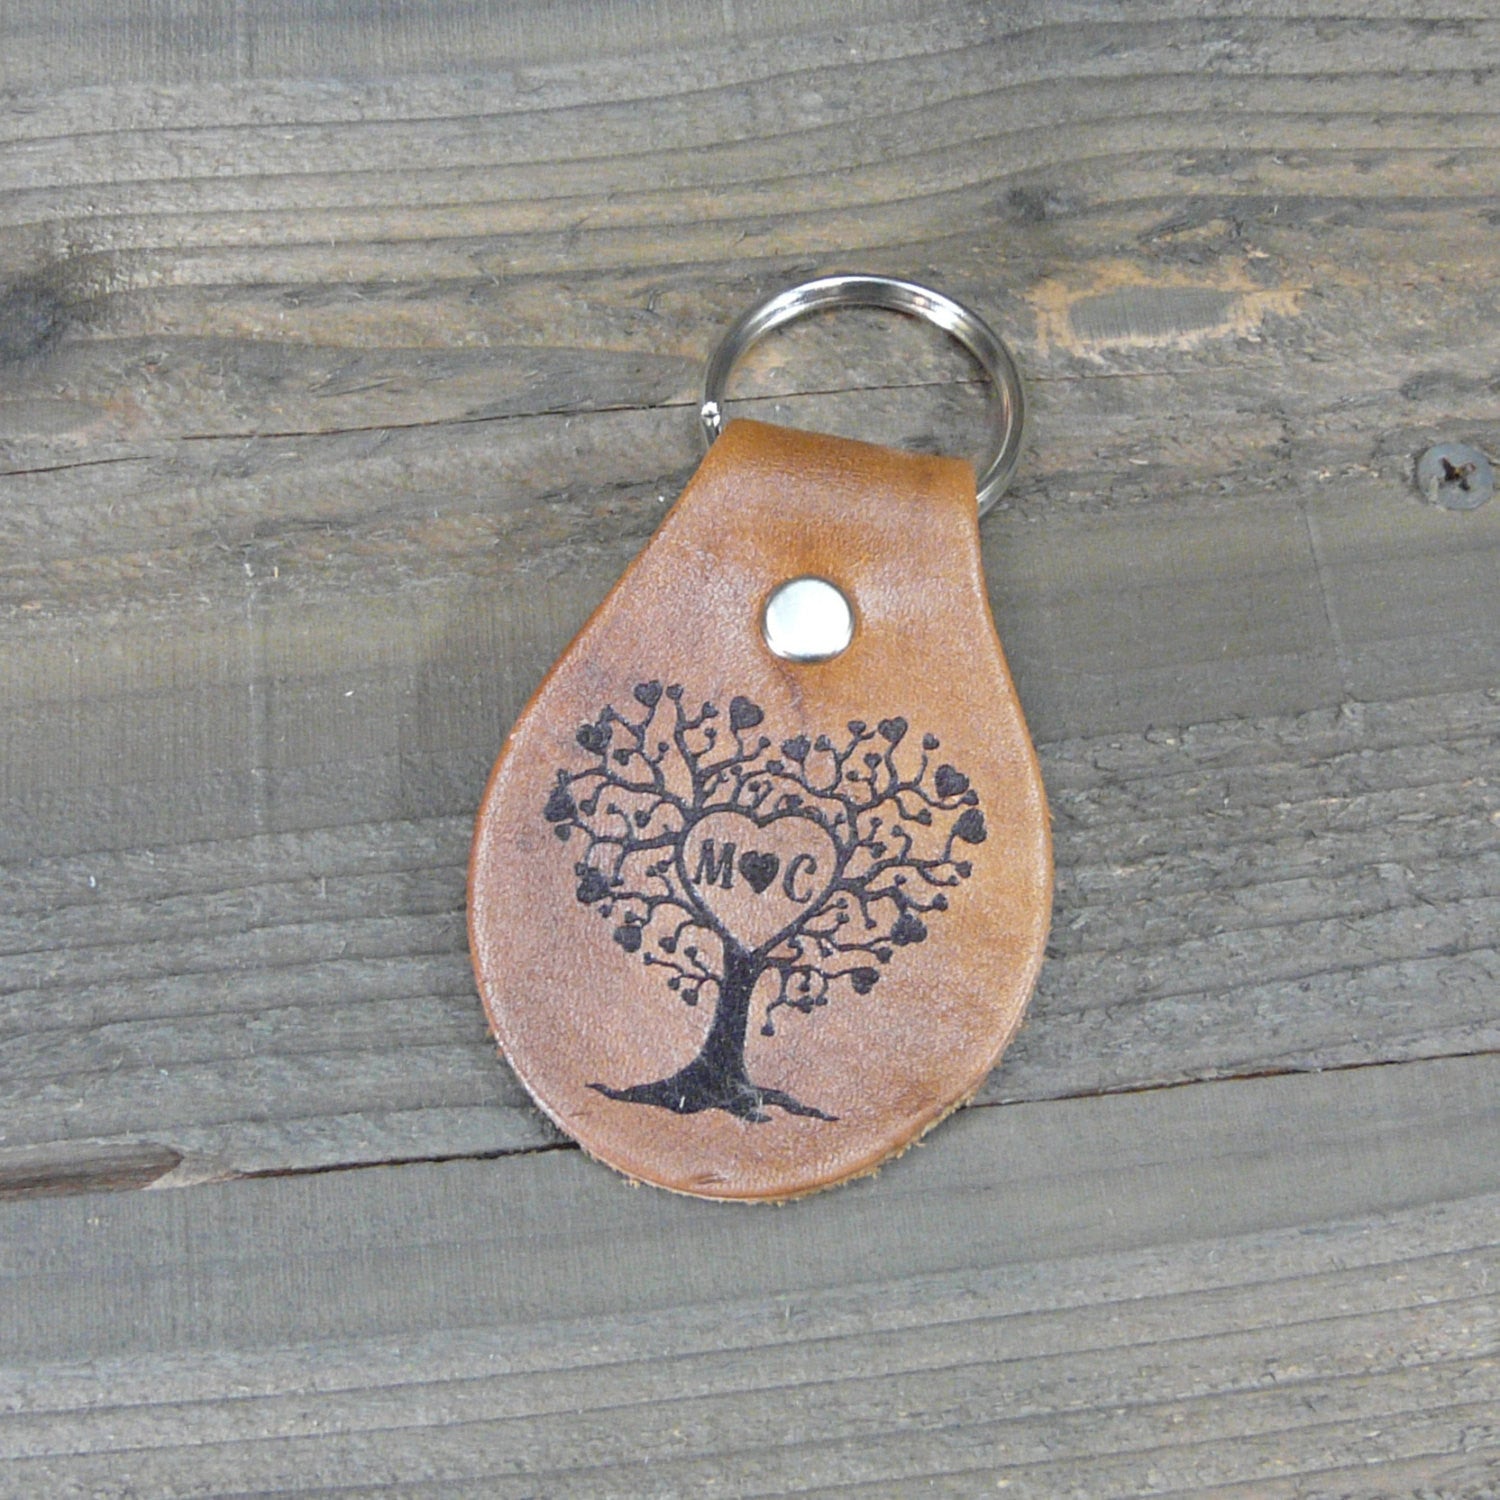 Leaf Leather Key Ring Key Fob Tooled Leaf Design Key Chain 